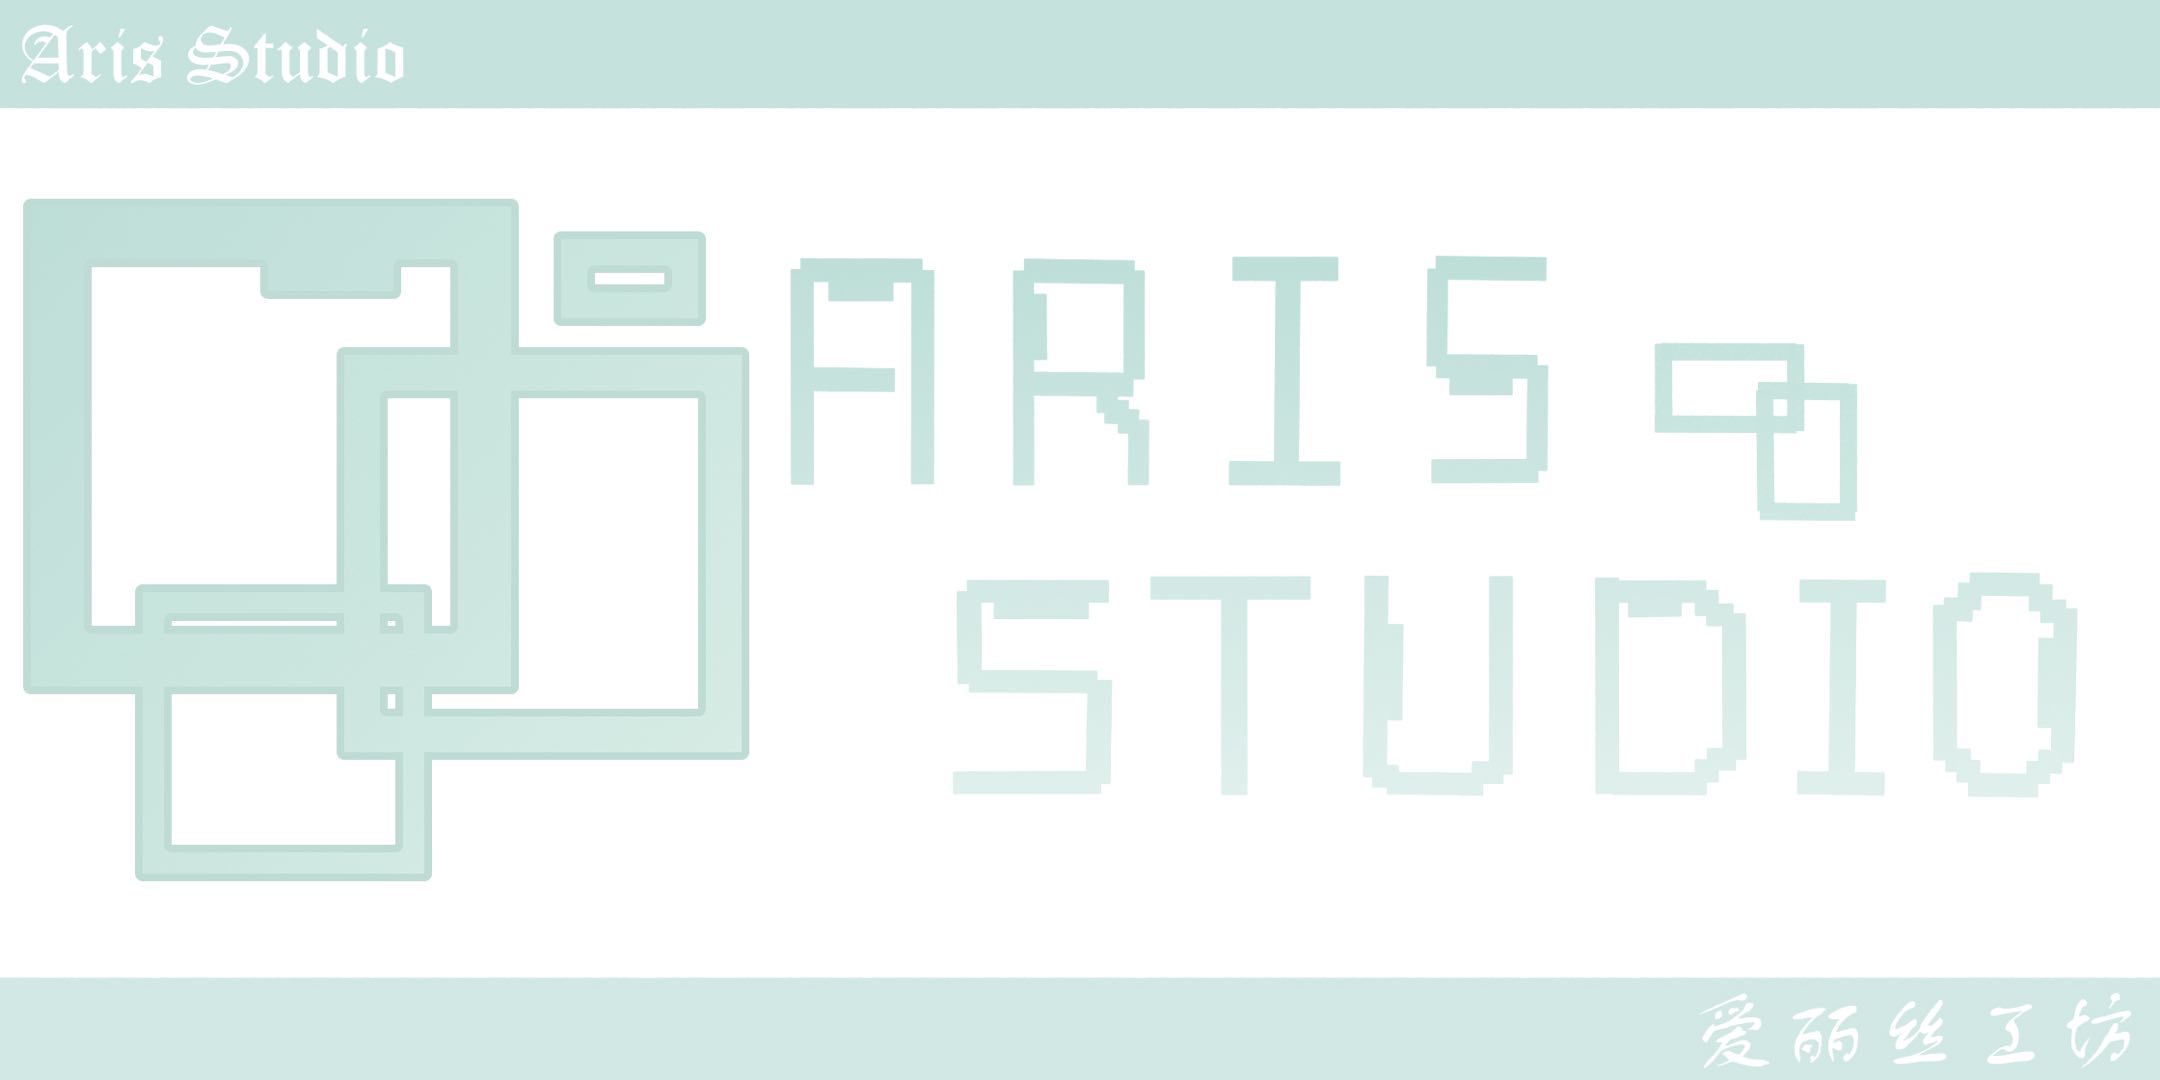 Aris Studio logo